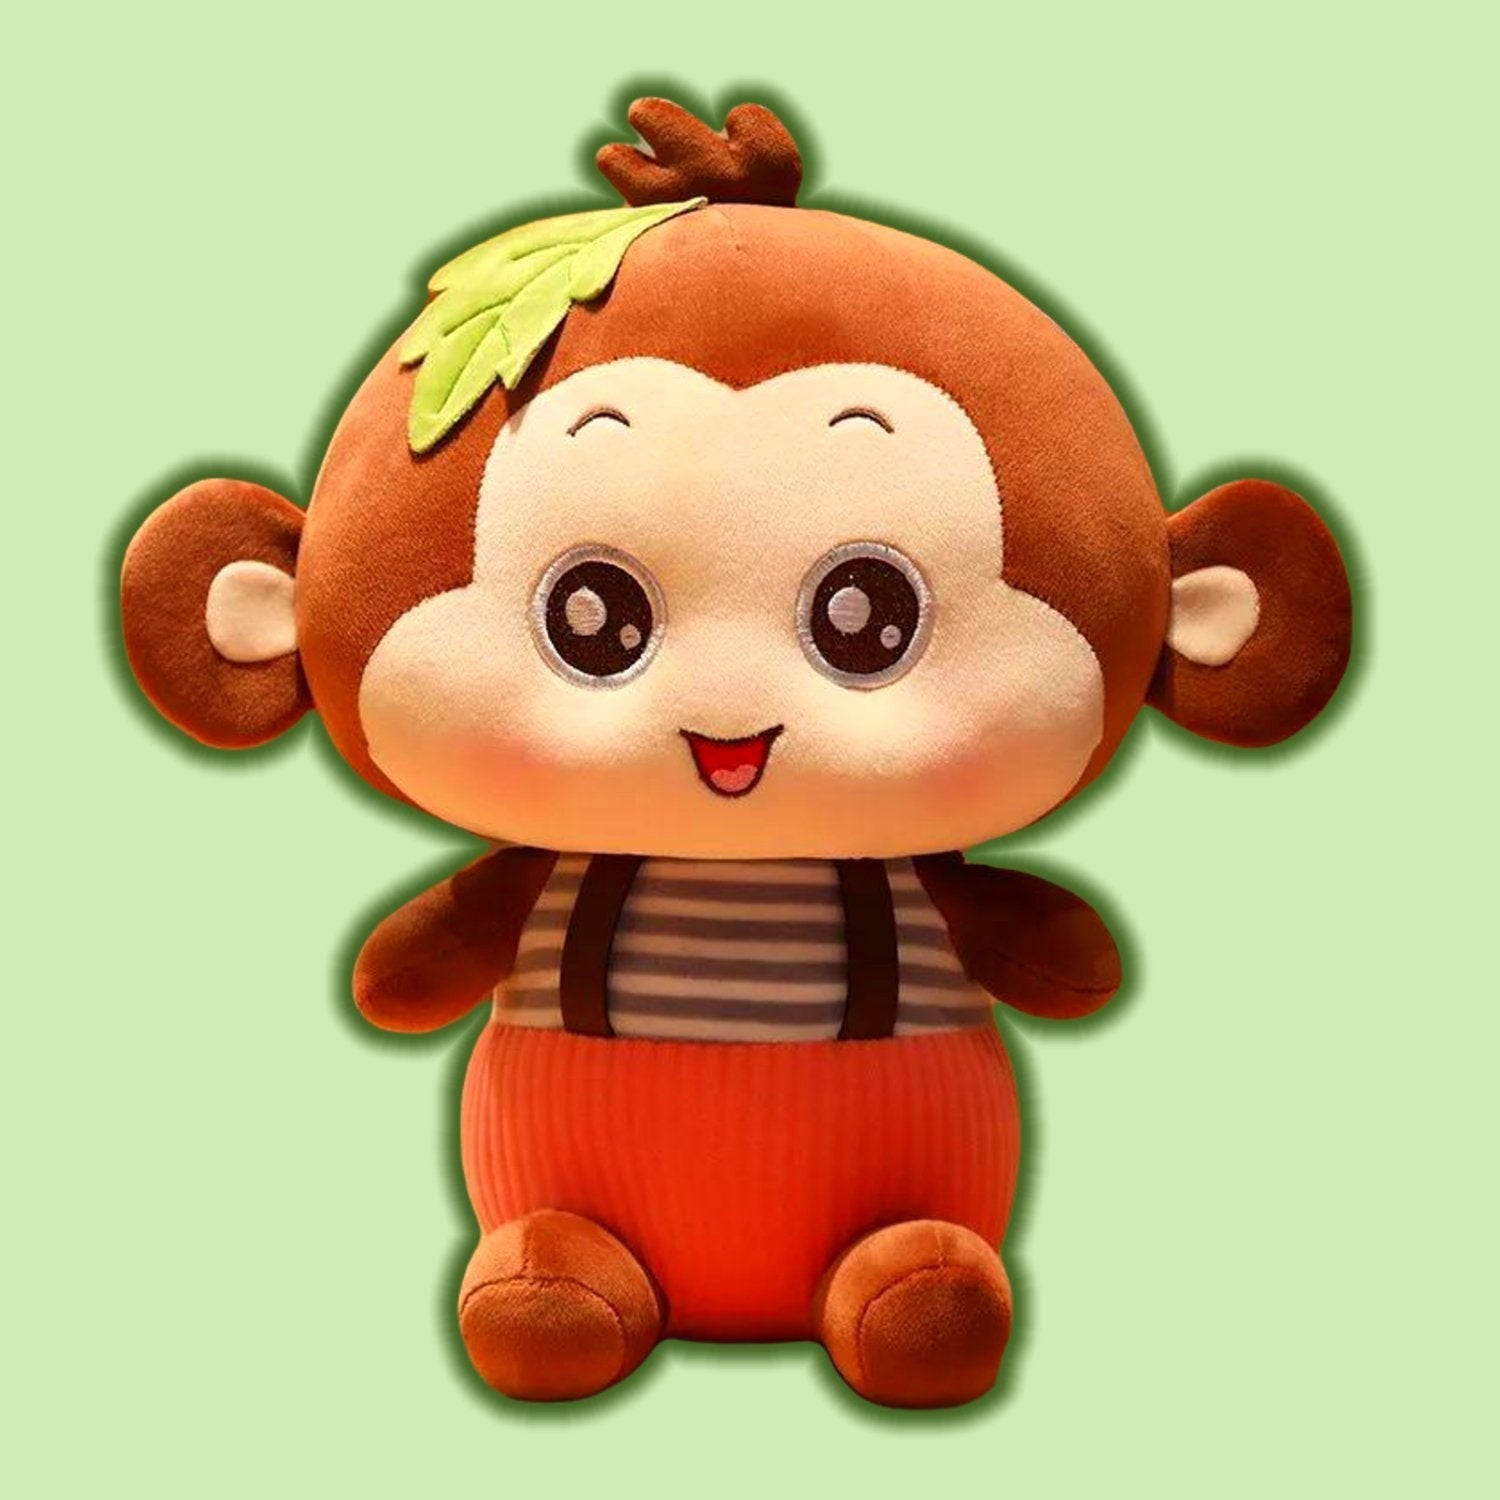 Naughty Strap Monkey Plush Toy